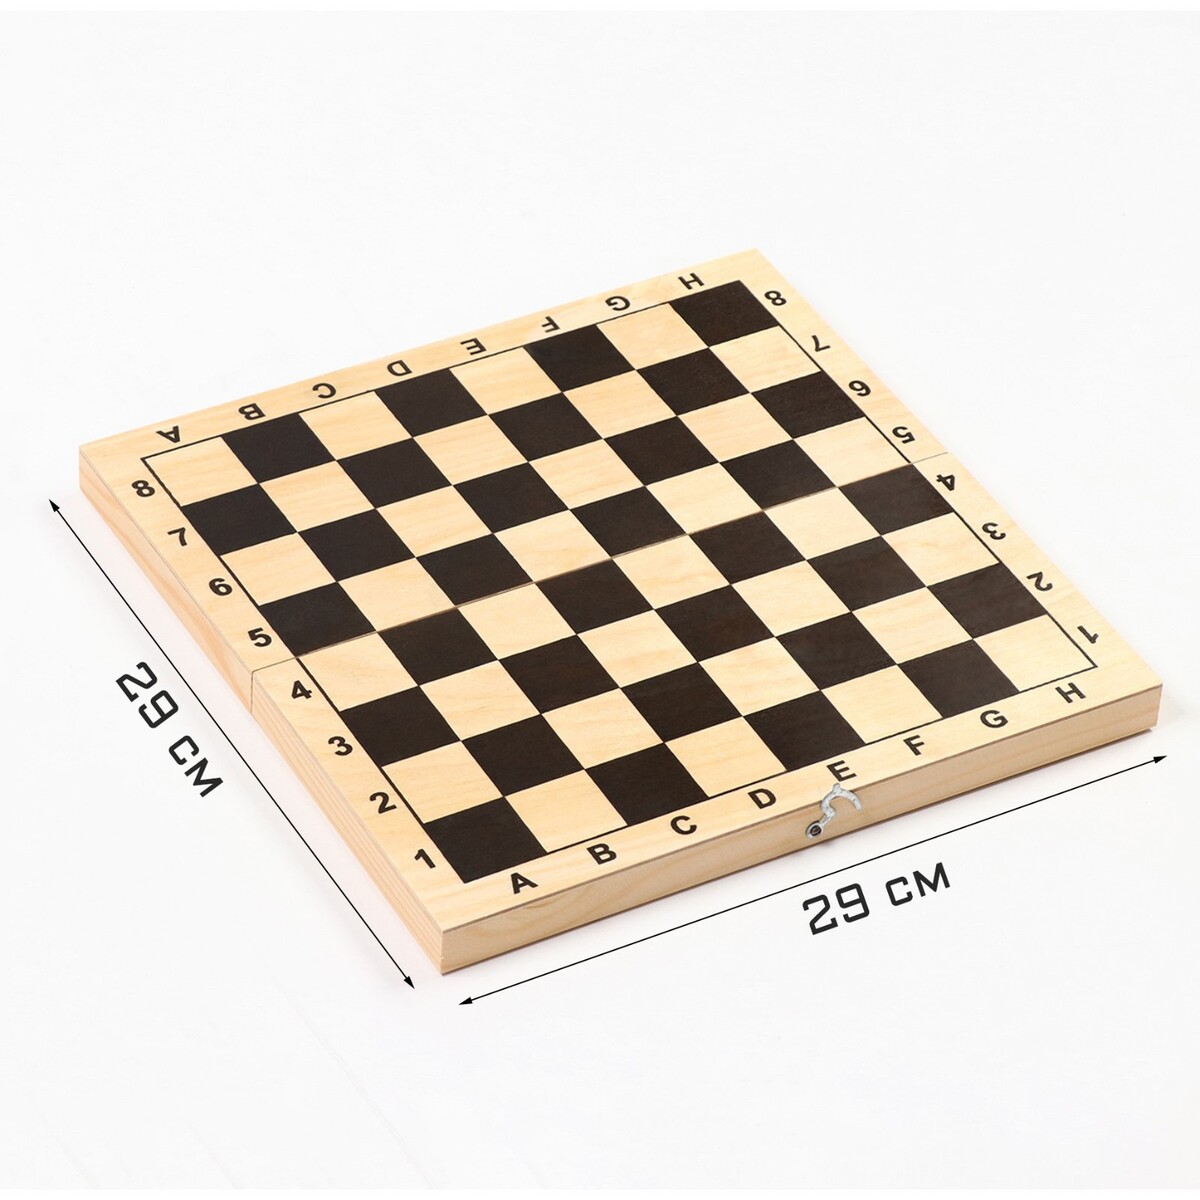 Шахматная доска обиходная, 29 х 29 х 3.5 см 1001 шахматная задача интерактивная книга которая учит выигрывать